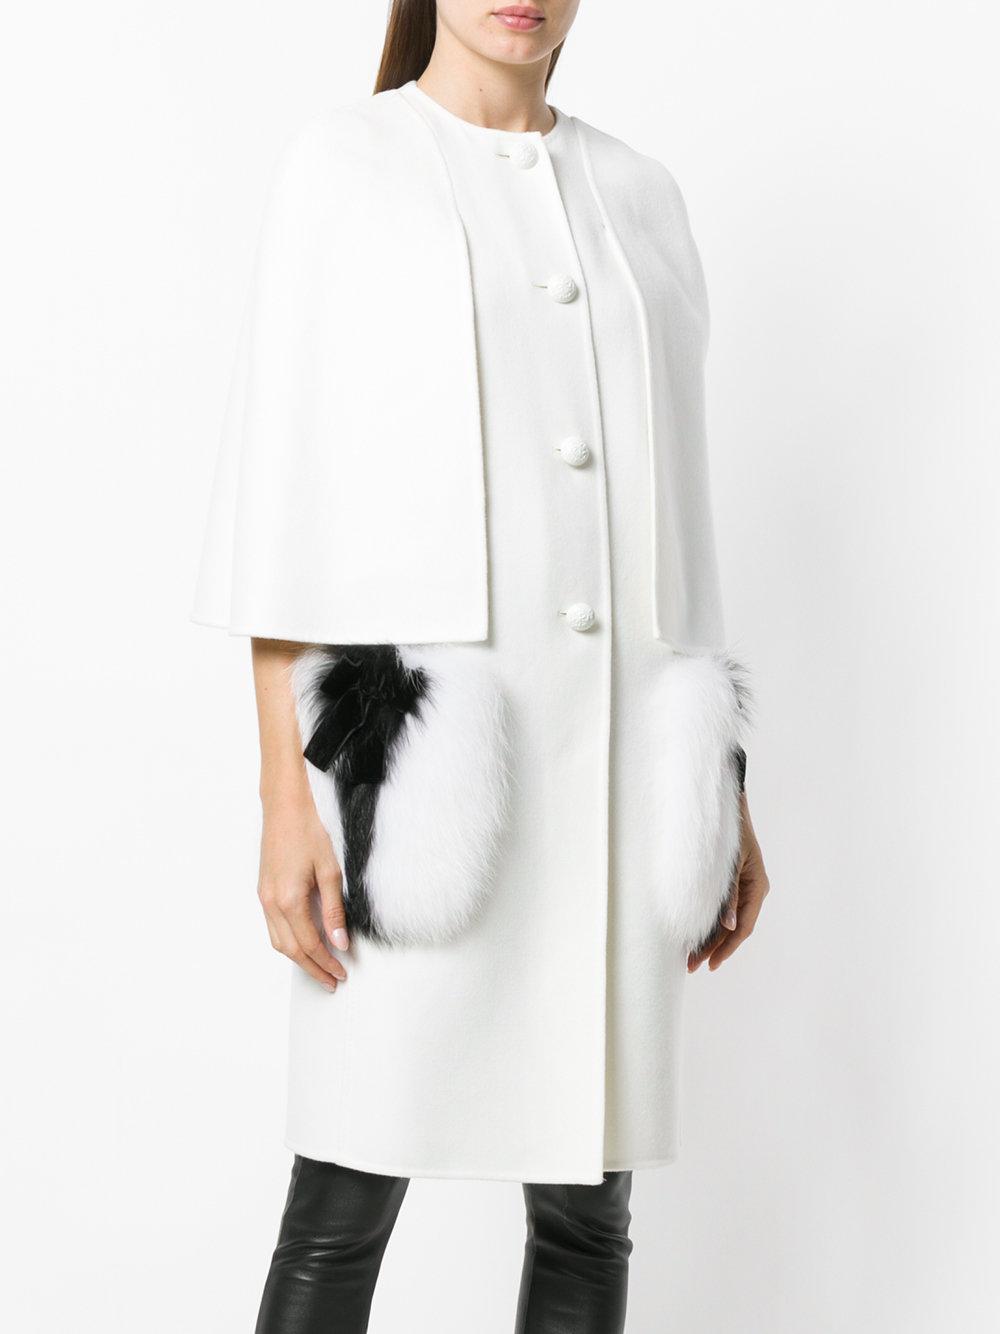 Fendi Single-breasted Wool Cape Coat W/ Fox Fur Pockets in White - Lyst